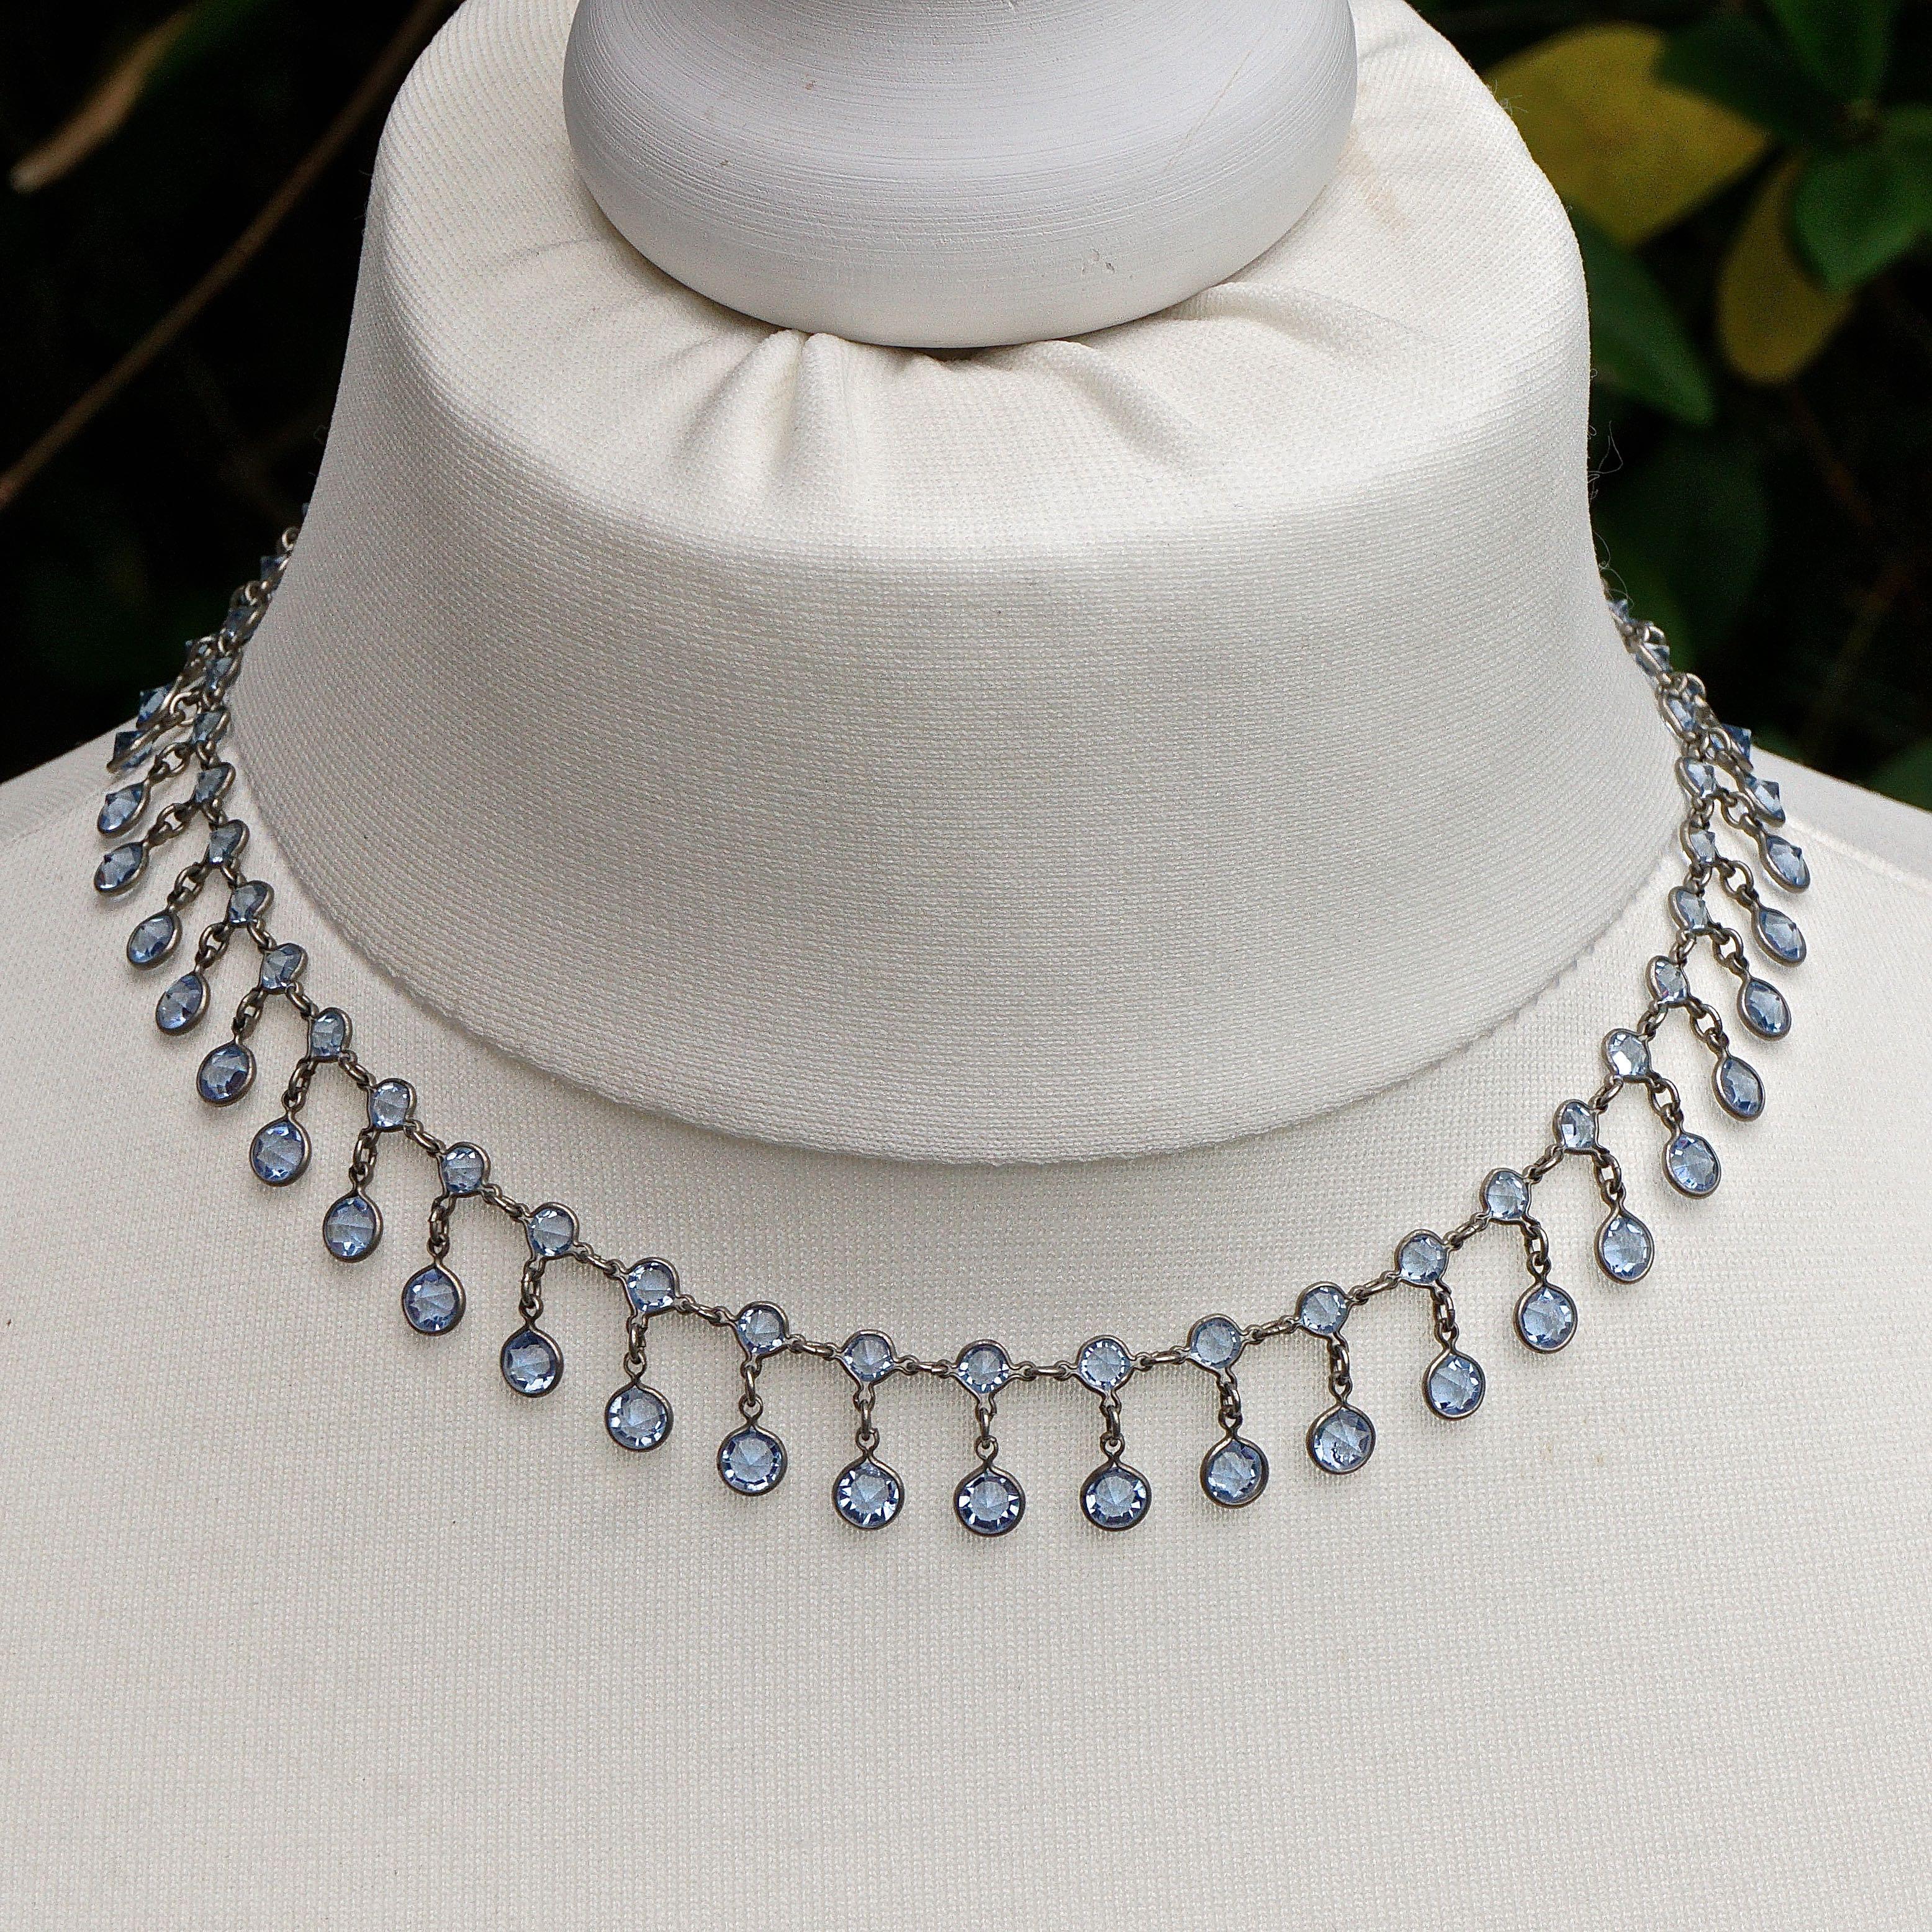 
Schöne Art Deco Platinon Girlanden-Halskette mit blauen Kristalltropfen. Die facettierten Kristalle sind vorne erhaben und hinten spitz zulaufend, damit sie maximal funkeln. Länge 39,5 cm / 15,5 Zoll bei einer Breite von 1,3 cm / .5 Zoll. Die